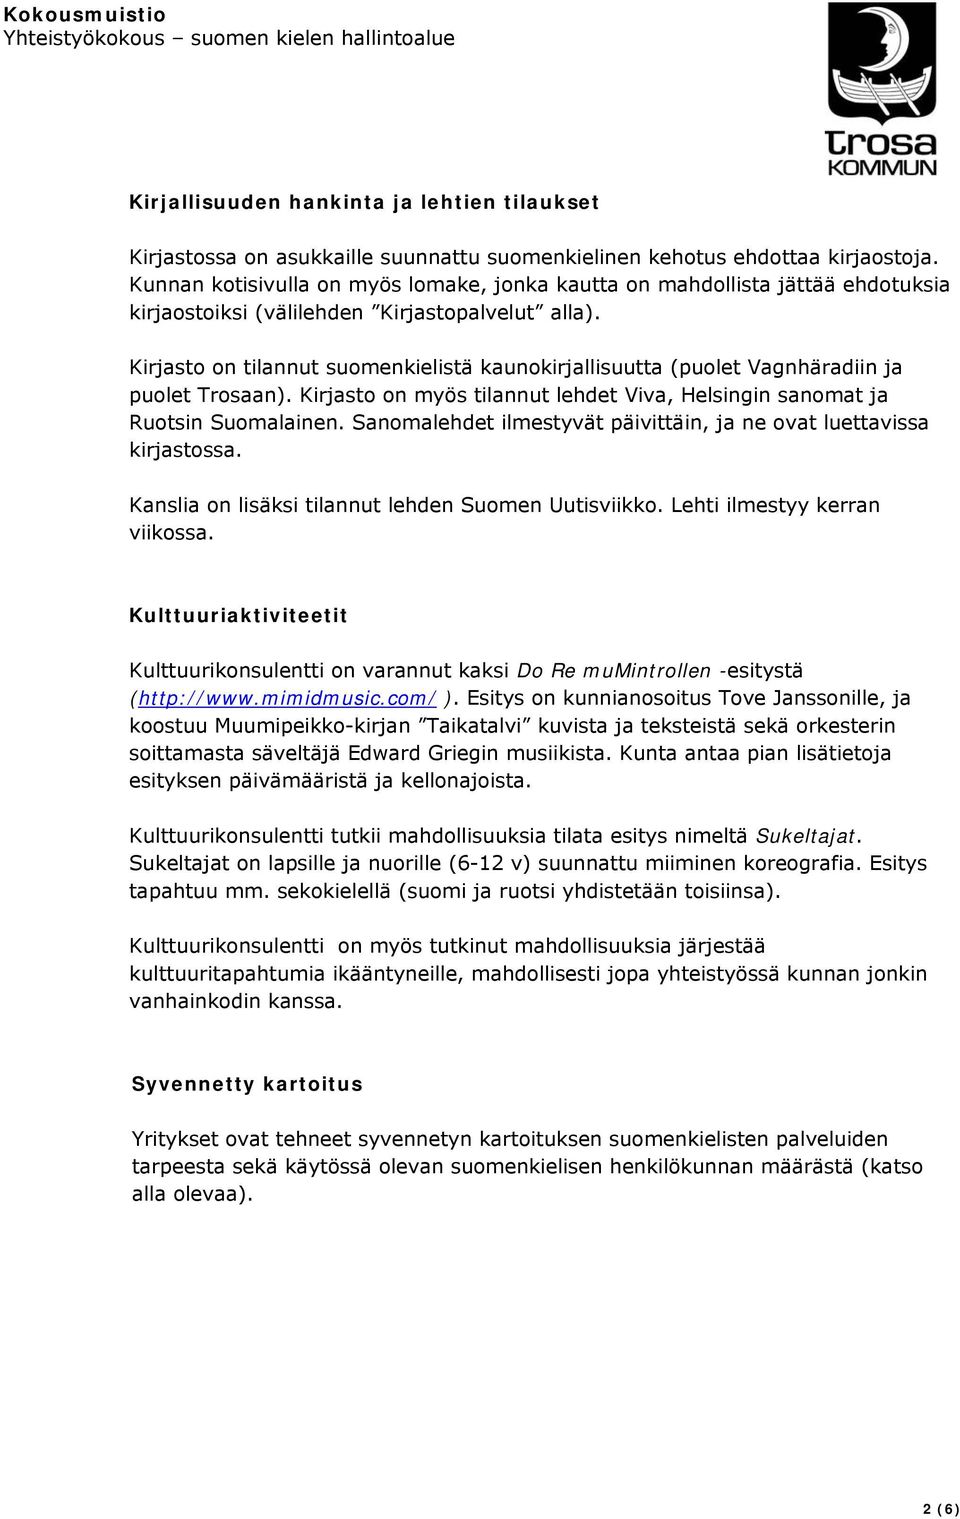 Kirjasto on tilannut suomenkielistä kaunokirjallisuutta (puolet Vagnhäradiin ja puolet Trosaan). Kirjasto on myös tilannut lehdet Viva, Helsingin sanomat ja Ruotsin Suomalainen.